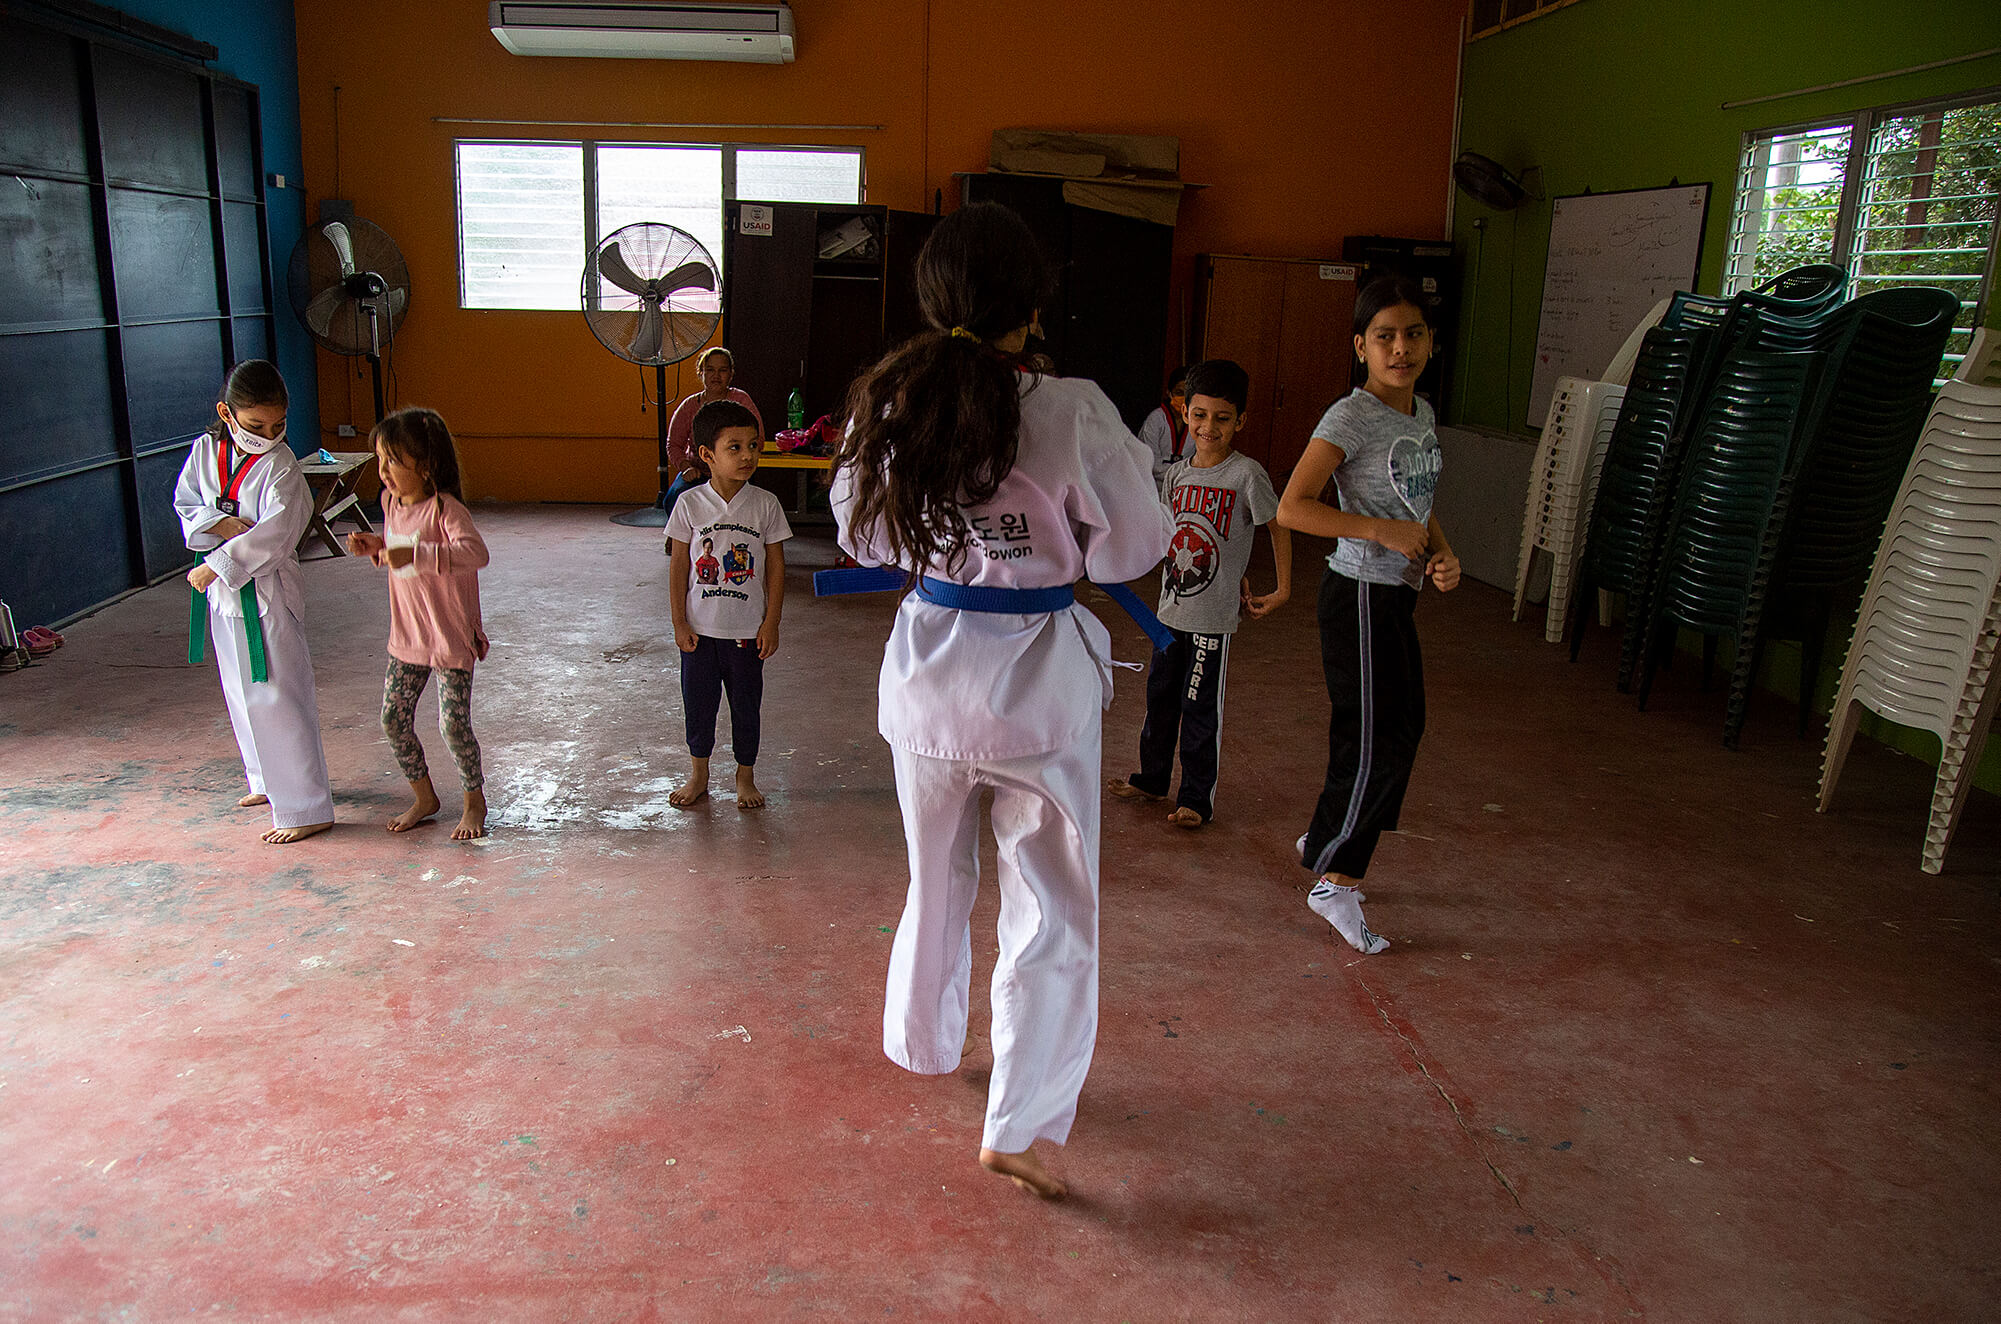 deporte en Honduras noticias karate fideicomiso deportes rivera hernandez taekwondo corrupción 2022 juventud de la en sps noticias hoy violencia juventud